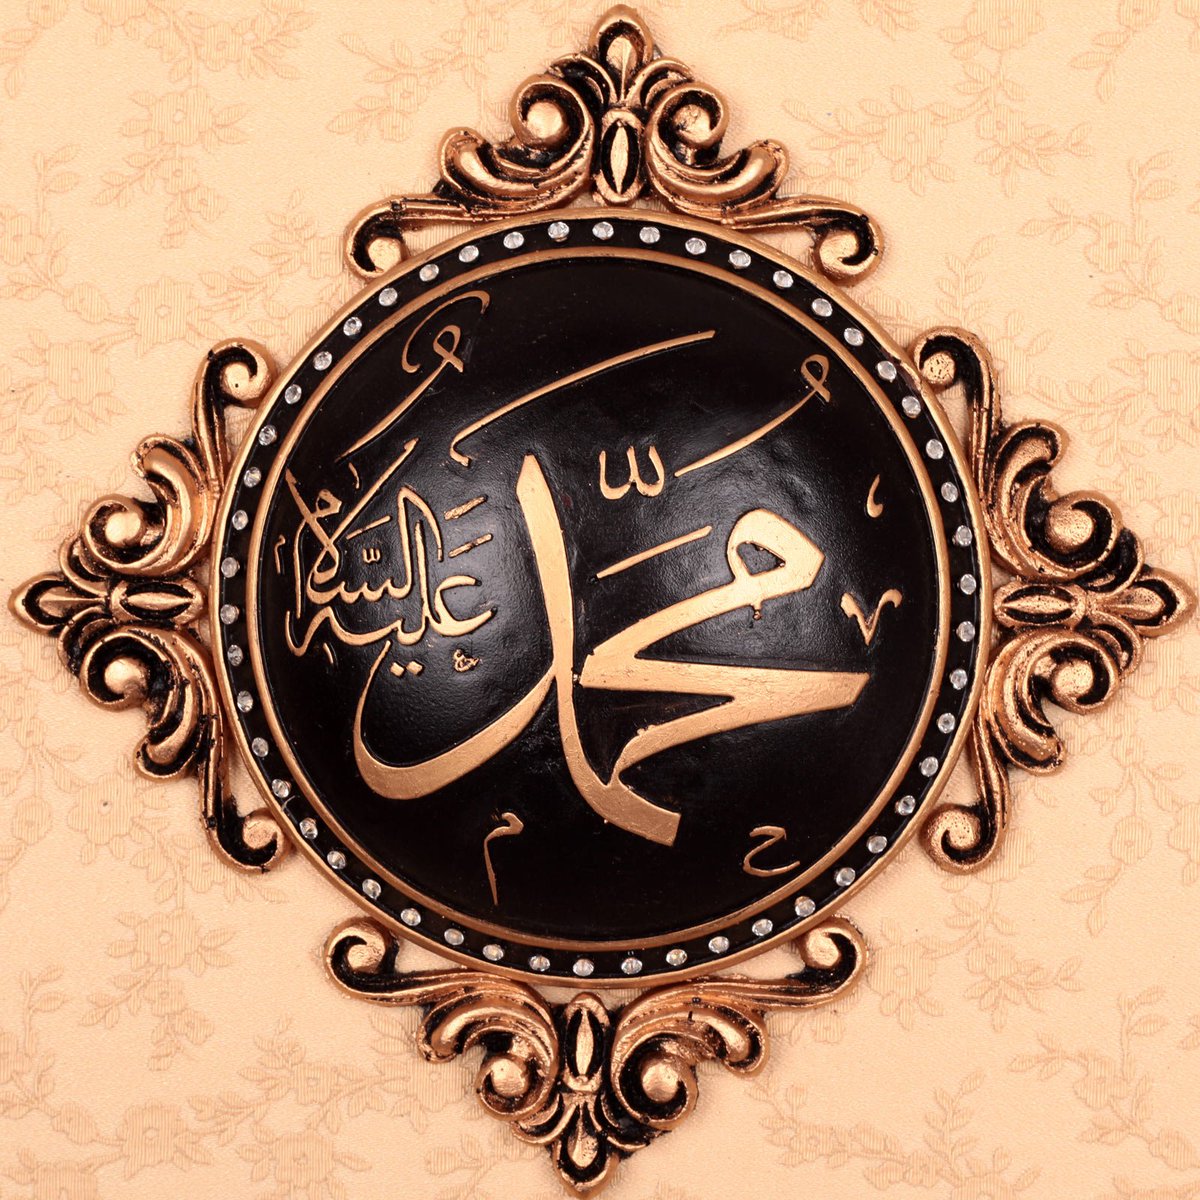 Х мусульманские. Имя пророка Мухаммеда на арабском. Имя пророка Мухаммеда. Мусульманские заставки. Мухаммед пророк на арабском.